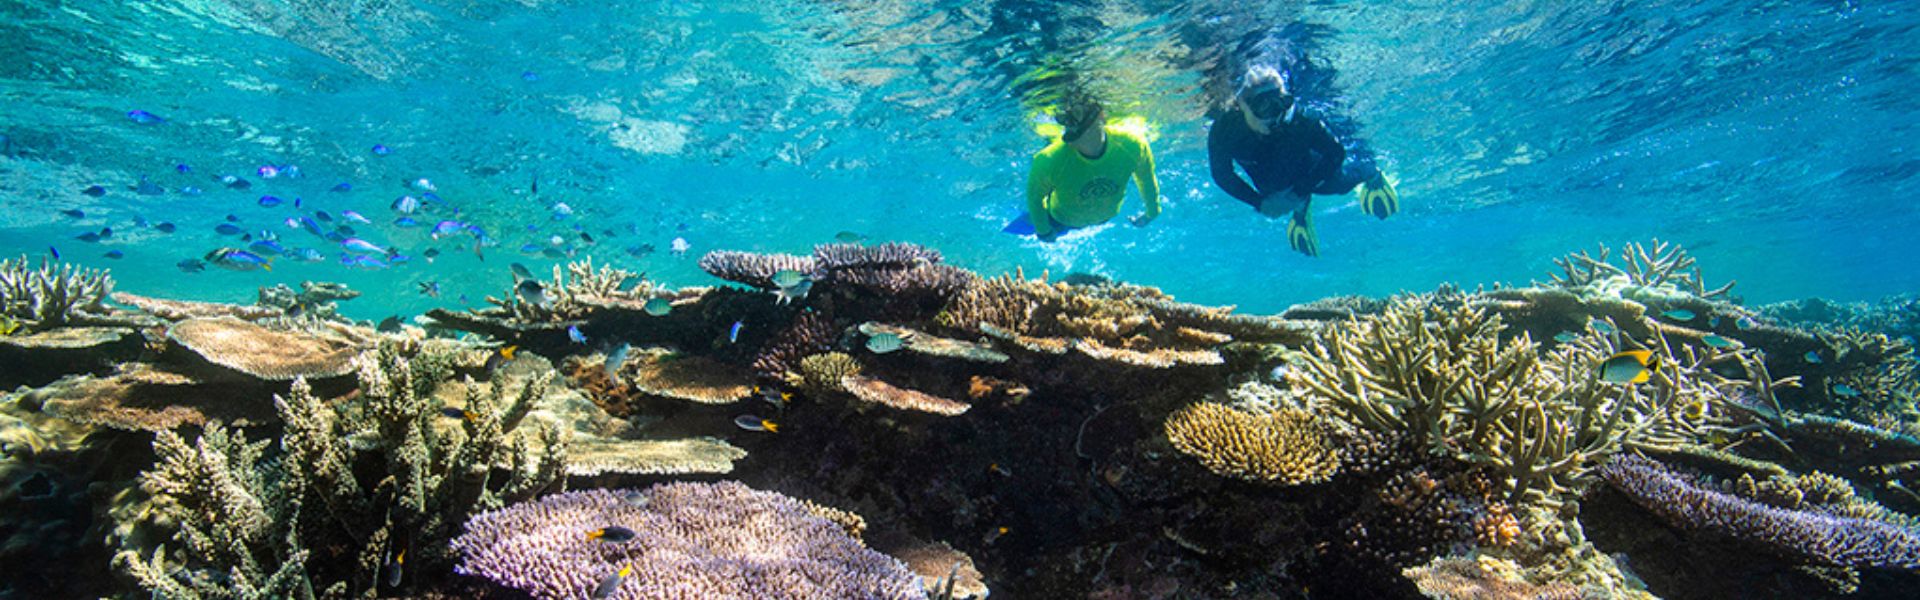 Snorkelling in Great Barrier Reef, Queensland, Australia, 20Oct22